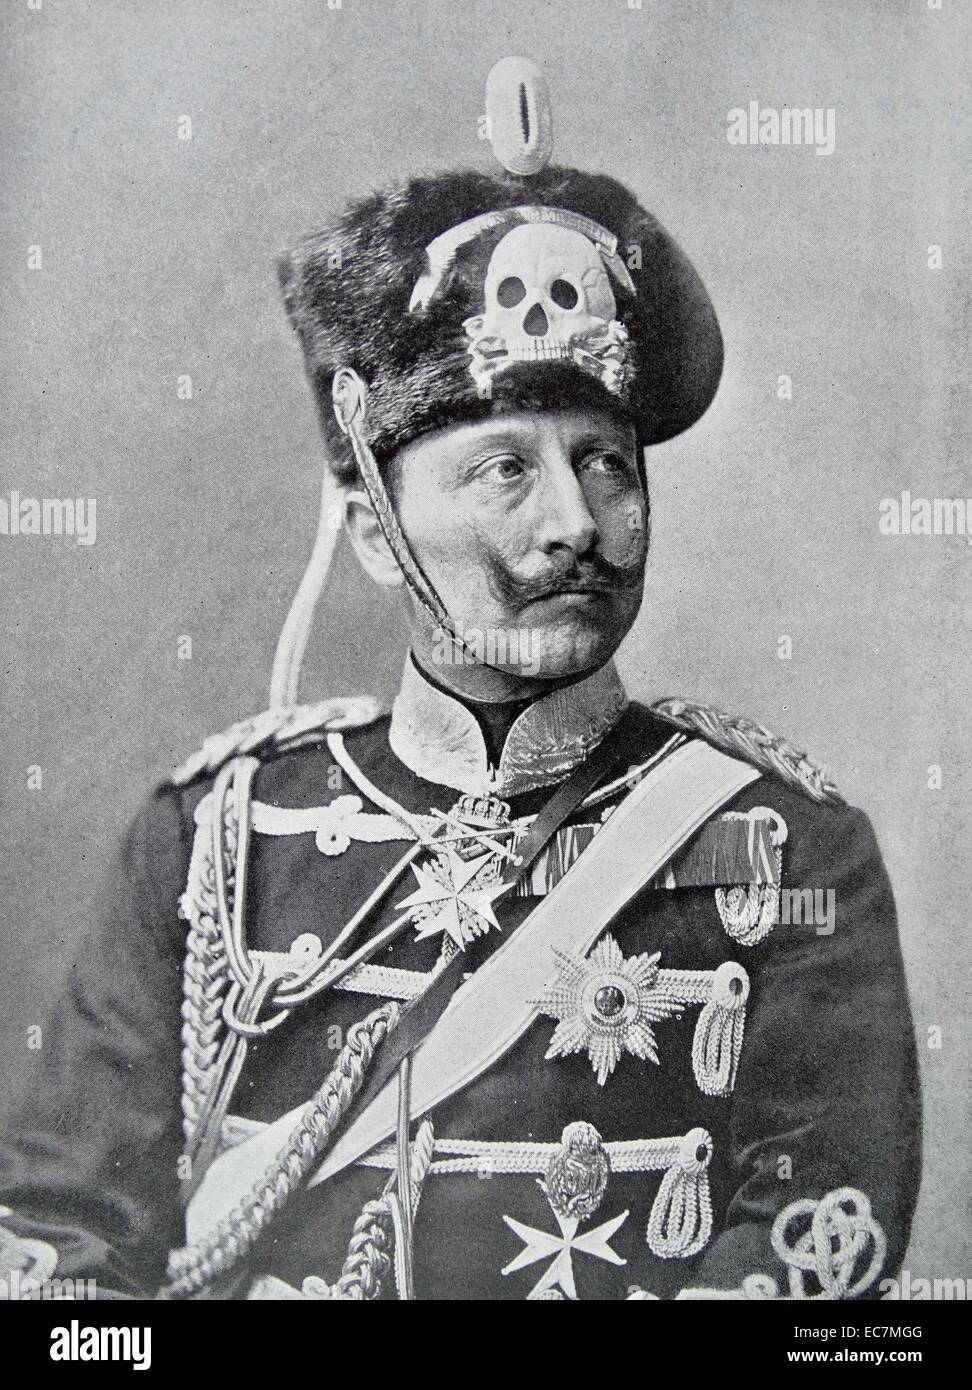 Wilhelm II o di Guglielmo II; 1859 - 4 giugno 1941) è stato l'ultimo imperatore tedesco (Kaiser) e re di Prussia, sentenza l'impero tedesco e del Regno di Prussia dal 15 giugno 1888 al 9 novembre 1918. Foto Stock